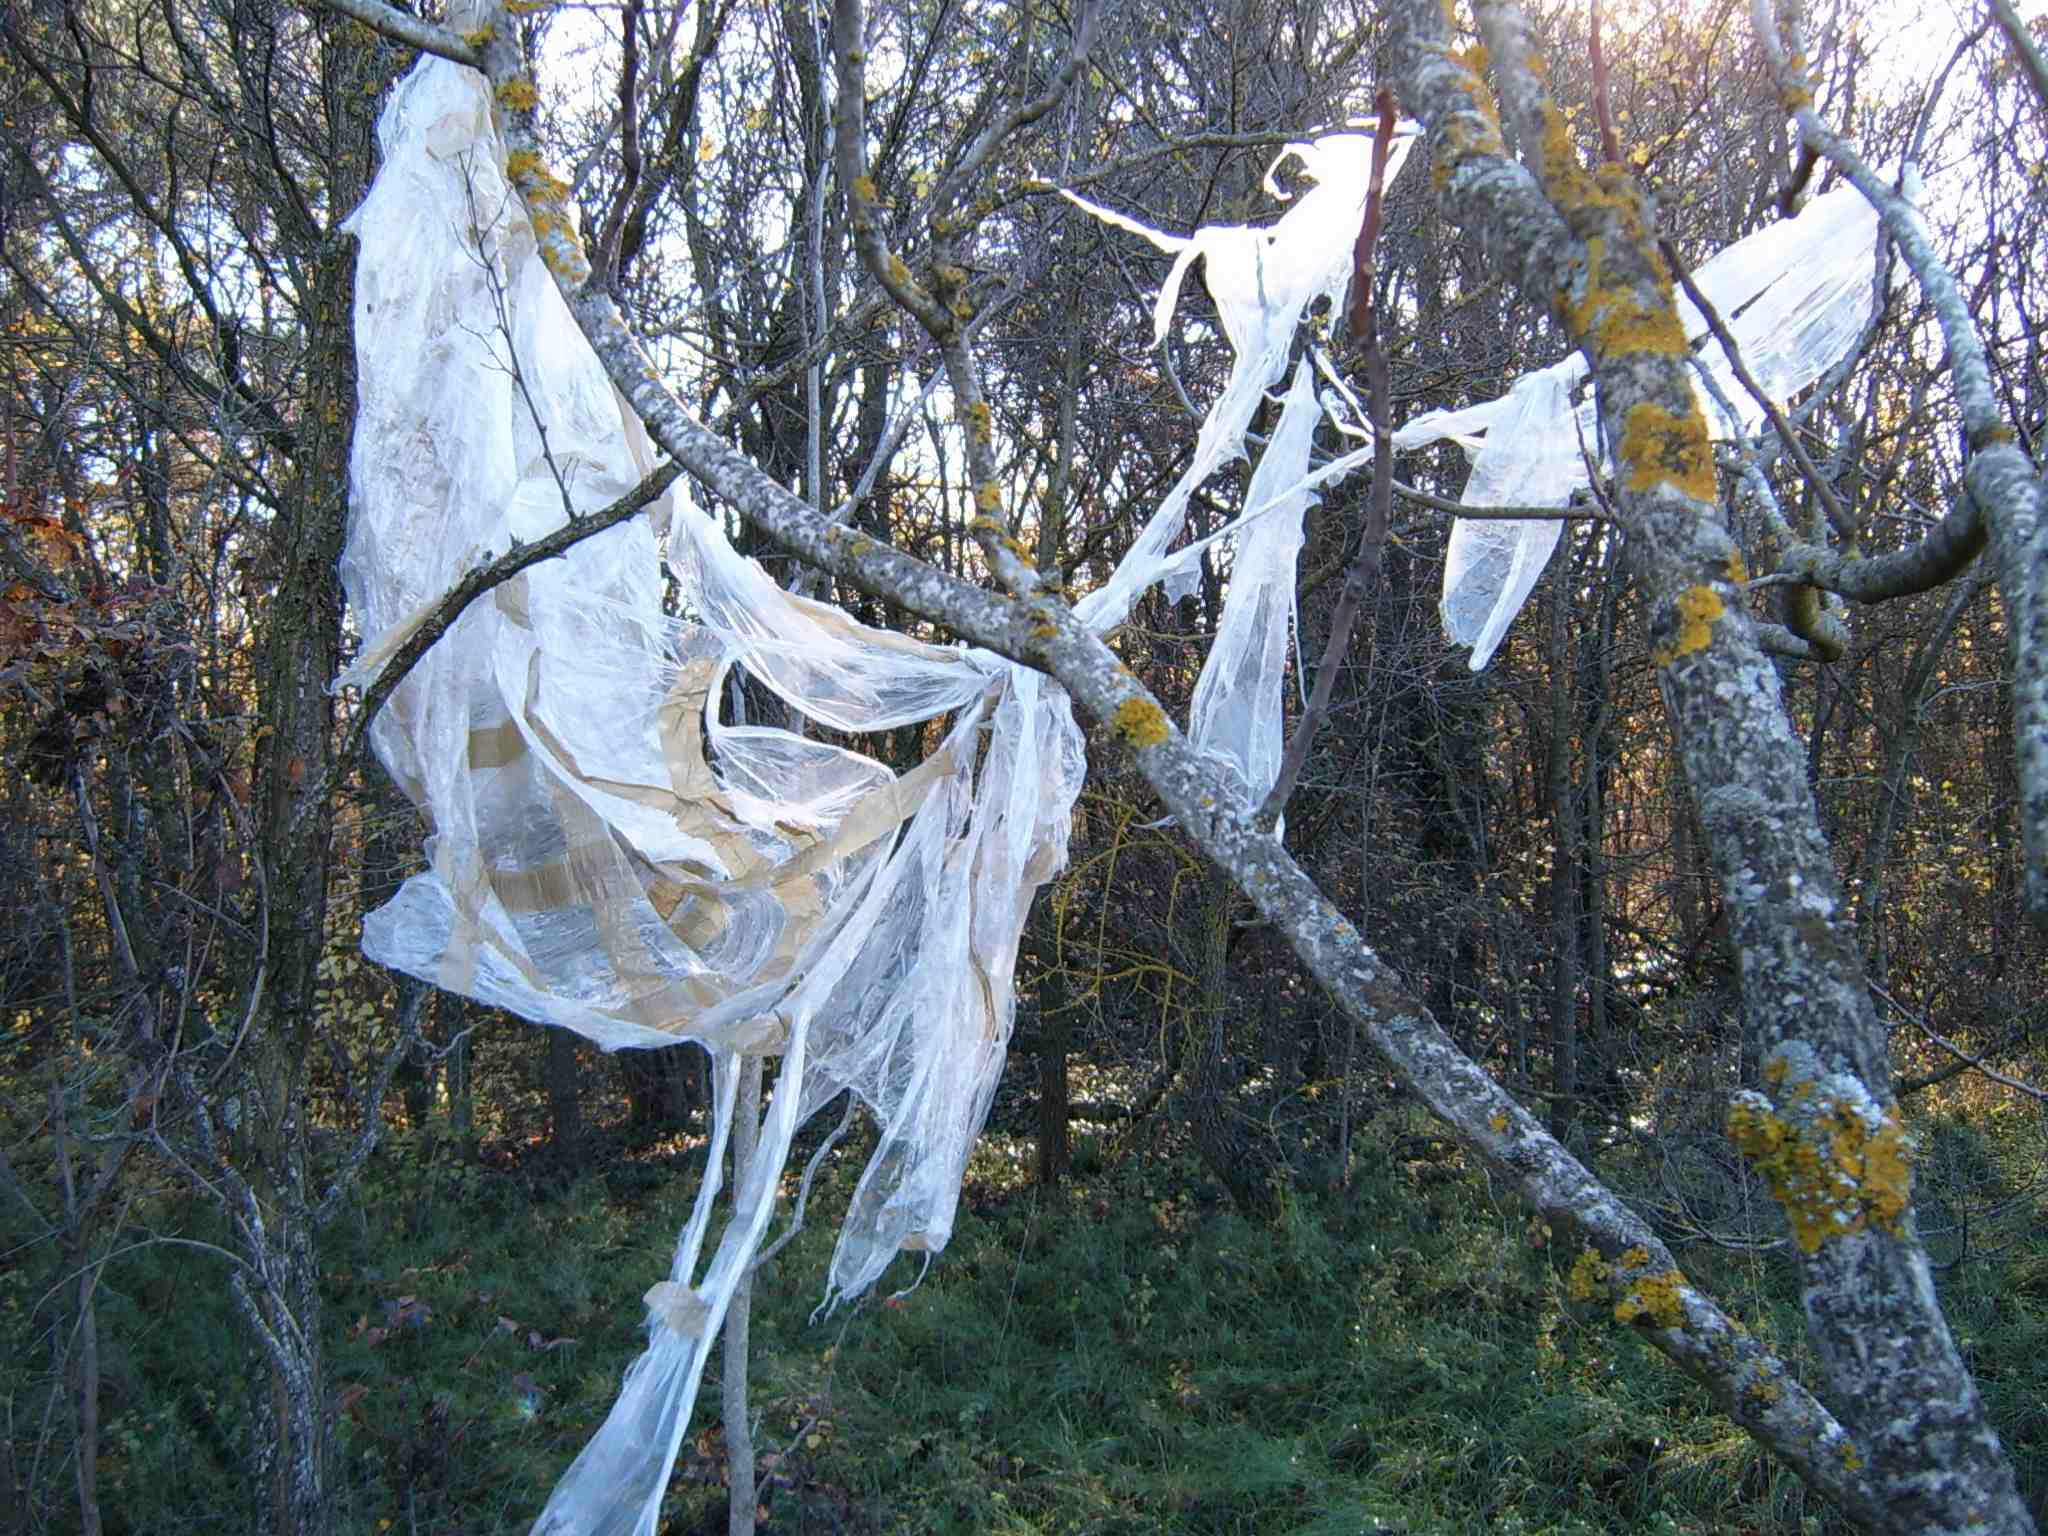 Déchets plastiques dans arbres transportés par le vent - déchets sauvages - pollution détritus